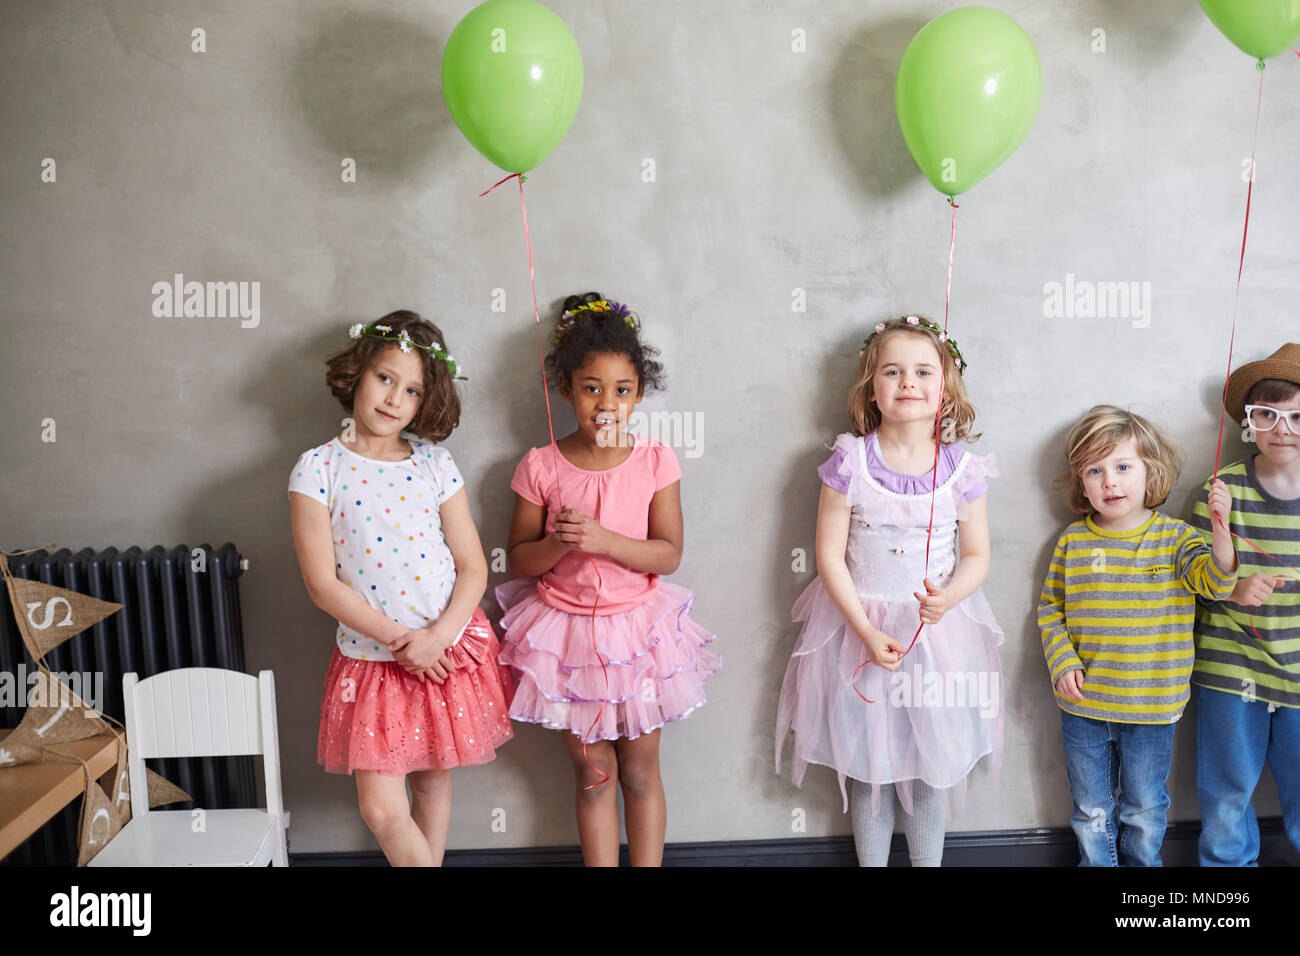 Ritratto di ragazze e ragazzi con palloncini verde in piedi contro la parete Foto Stock